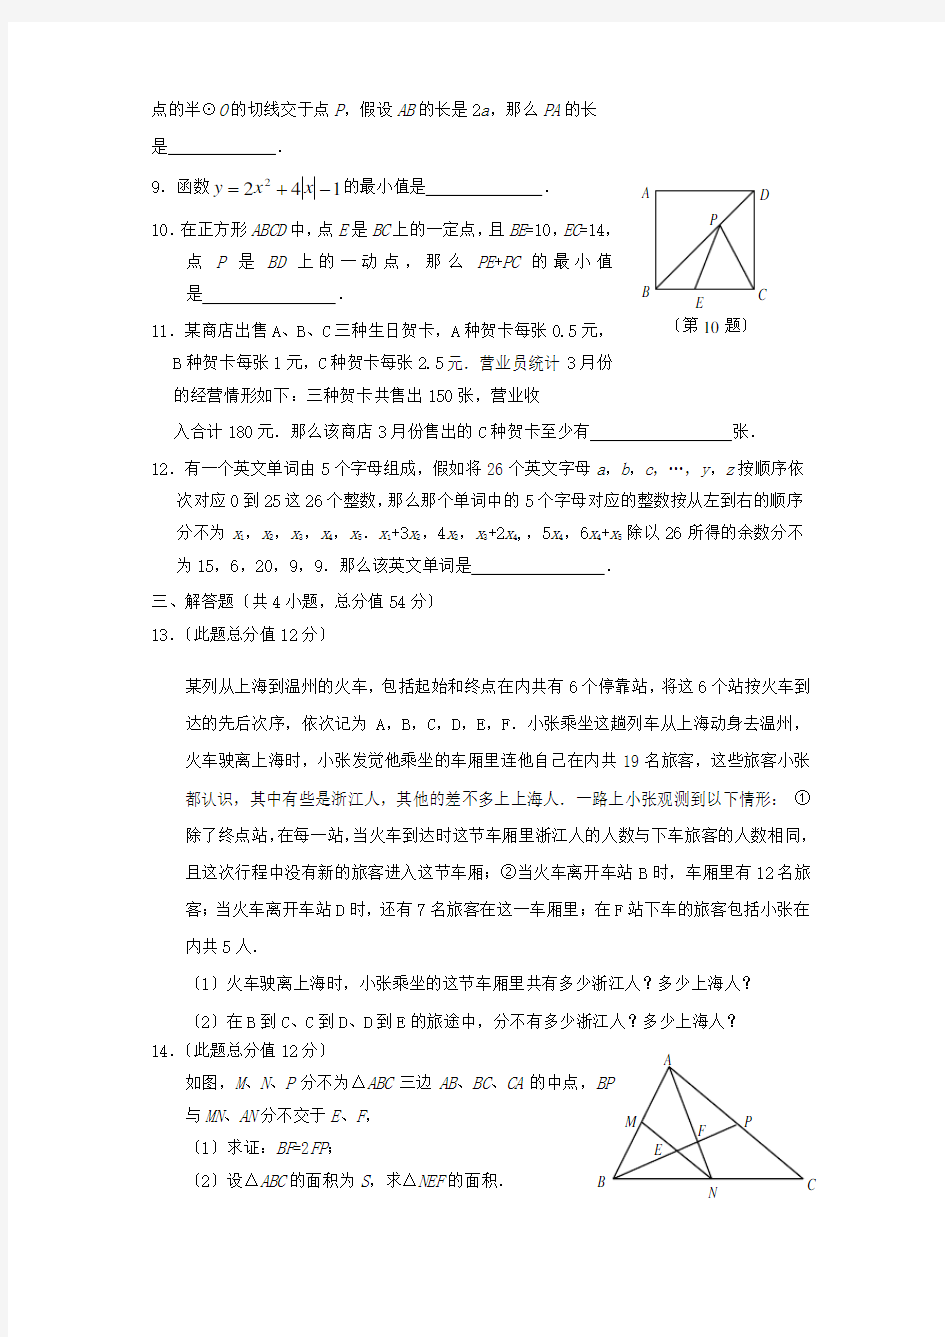 2020年全国初中数学竞赛(浙江赛区)复赛试题初中数学